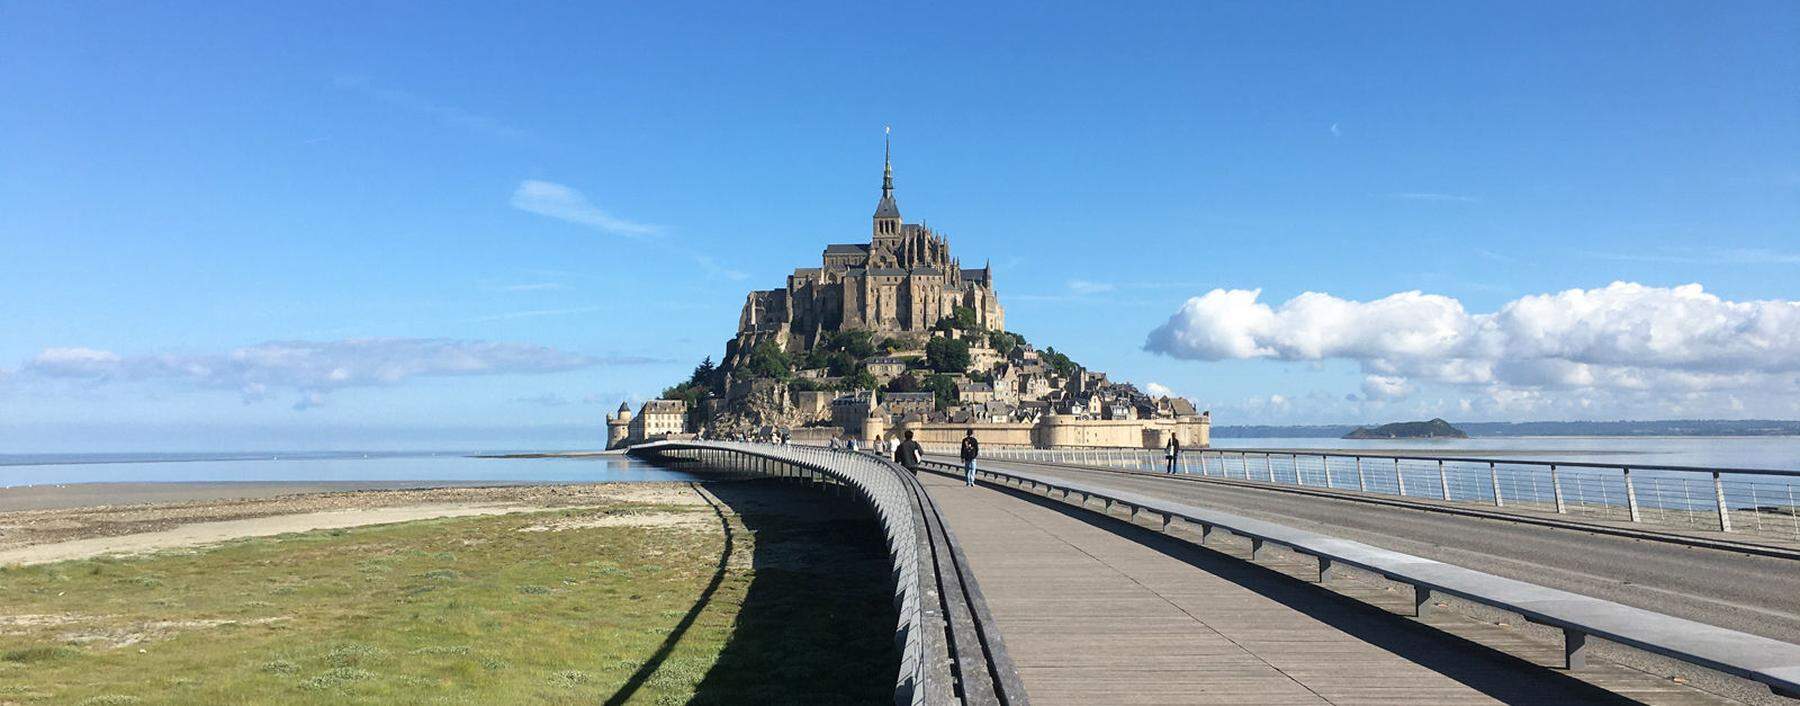 Der Mont Saint Michel ist von den stärksten Gezeiten Europas umgeben. 